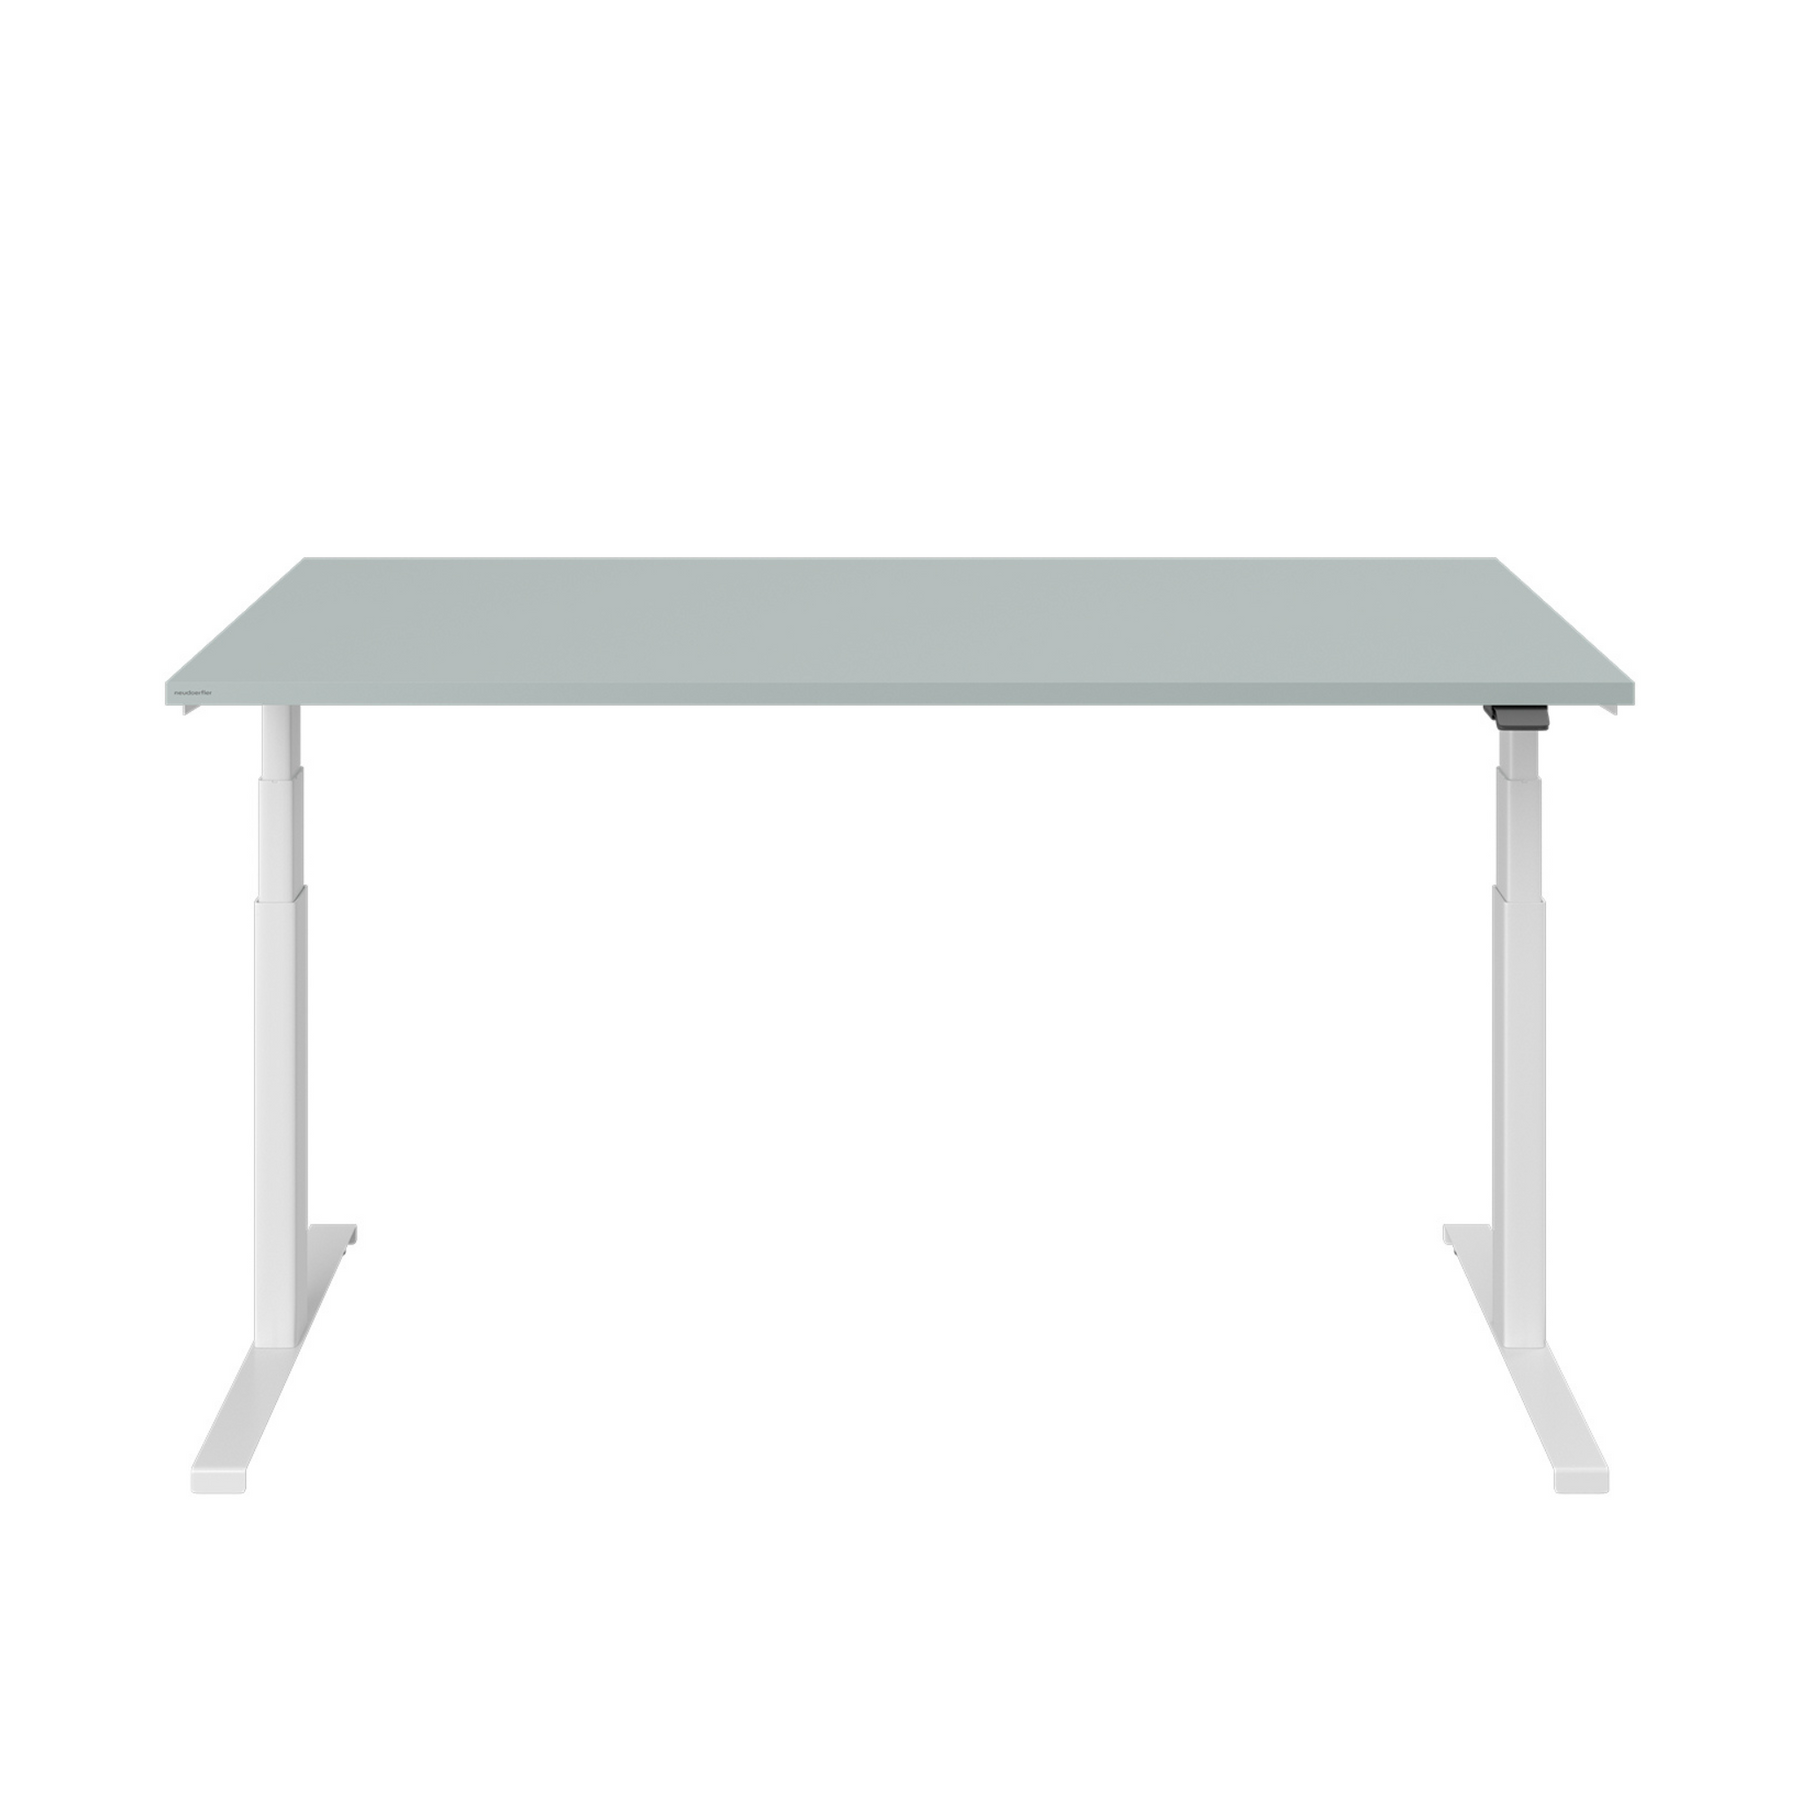 Von vorne sieht man einen höhenverstellbaren Tisch mit weißem Gestell. Die Tischplatte ist aus fjordgrün. Auf der rechten Seite des Tisches befindet sich der schwarze Hebel für die Höhenverstellung. 